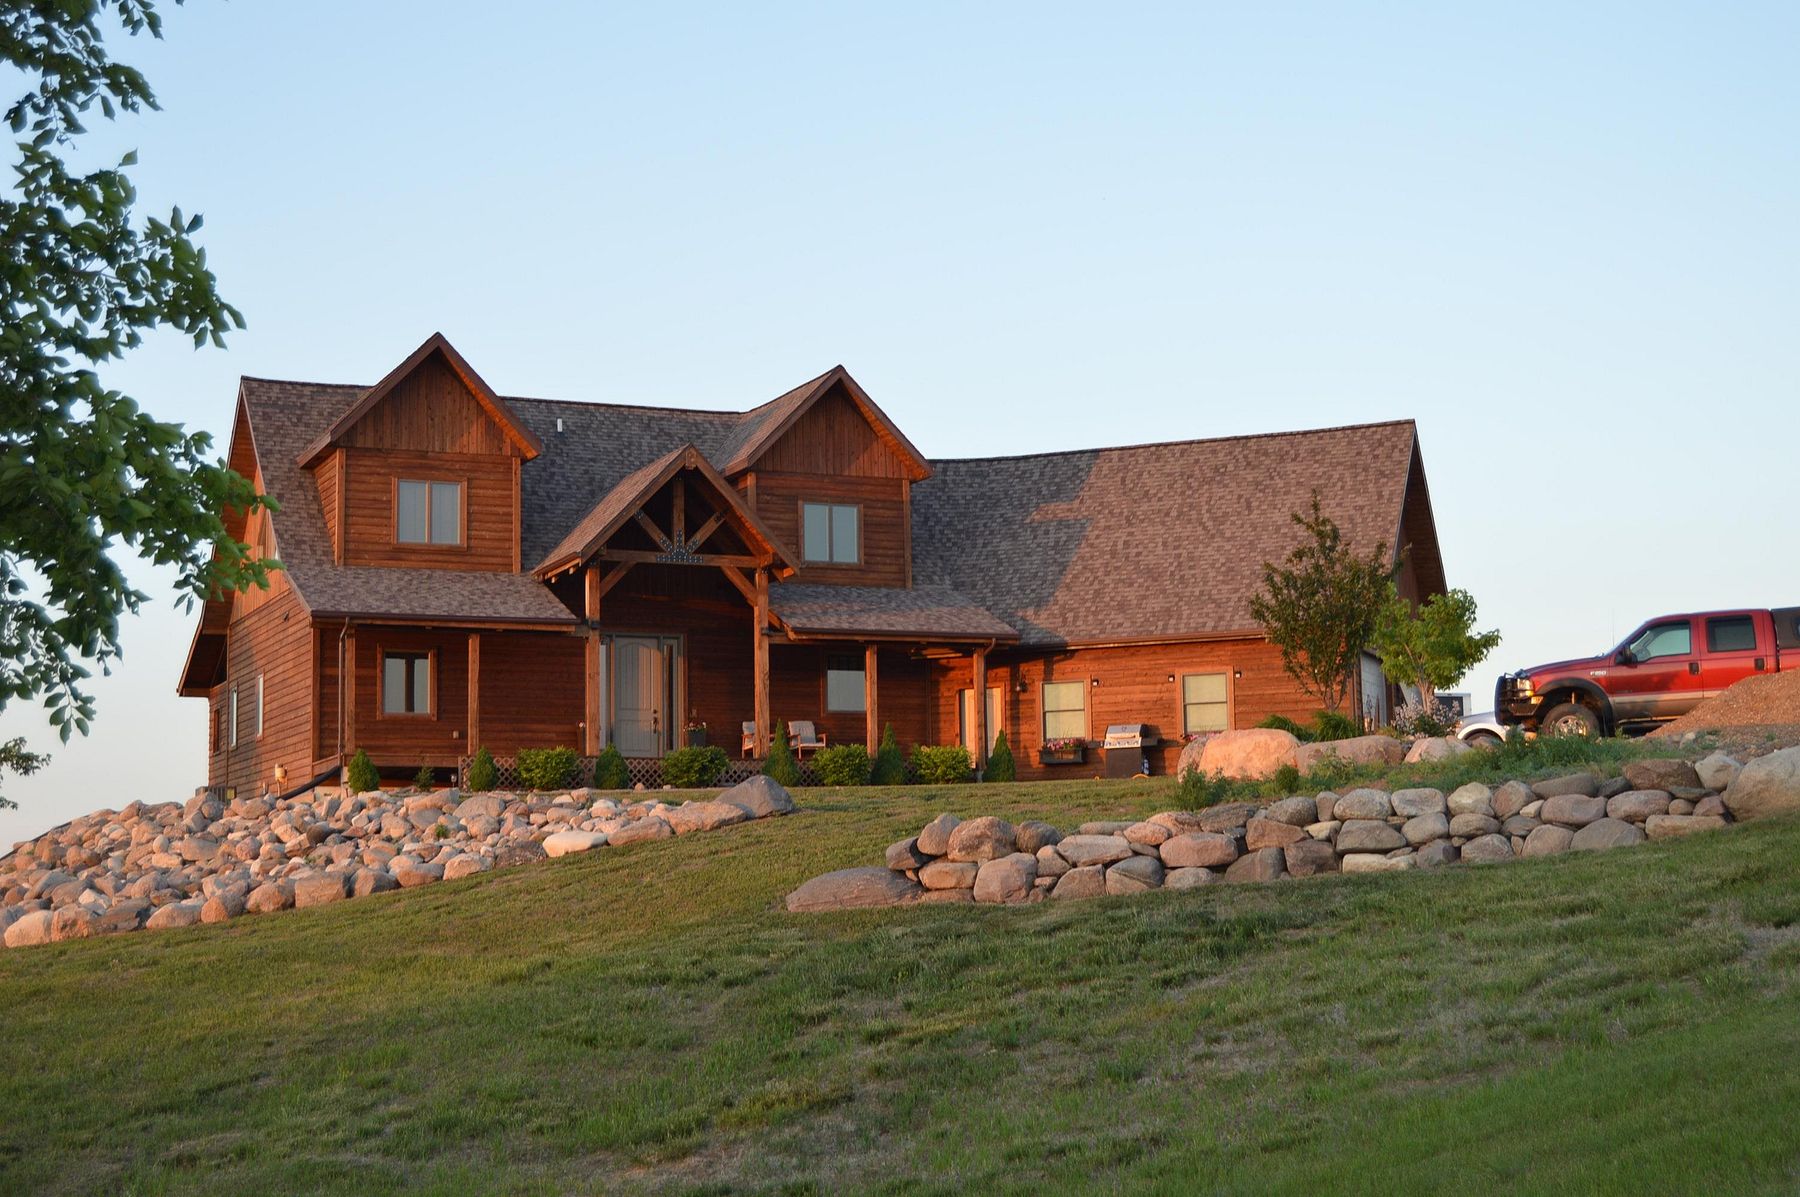 5.6 Acres of Residential Land & Home Fairfax, South Dakota, SD